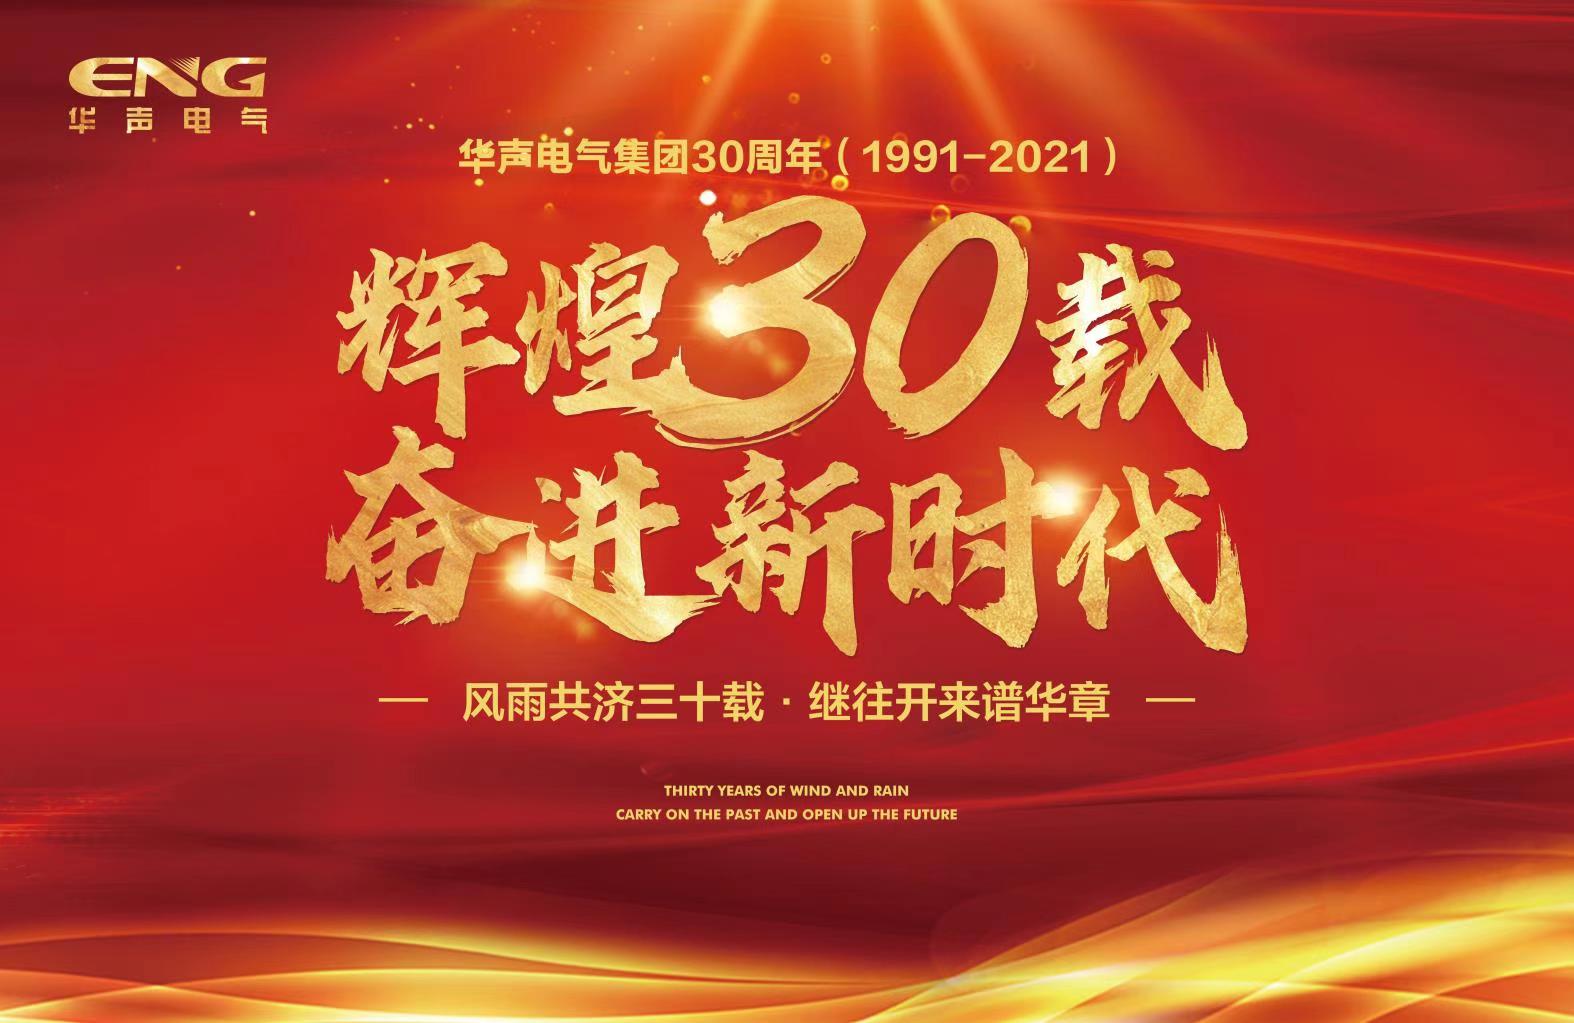 上海华声电气集团30周年庆典短视频征集活动通知